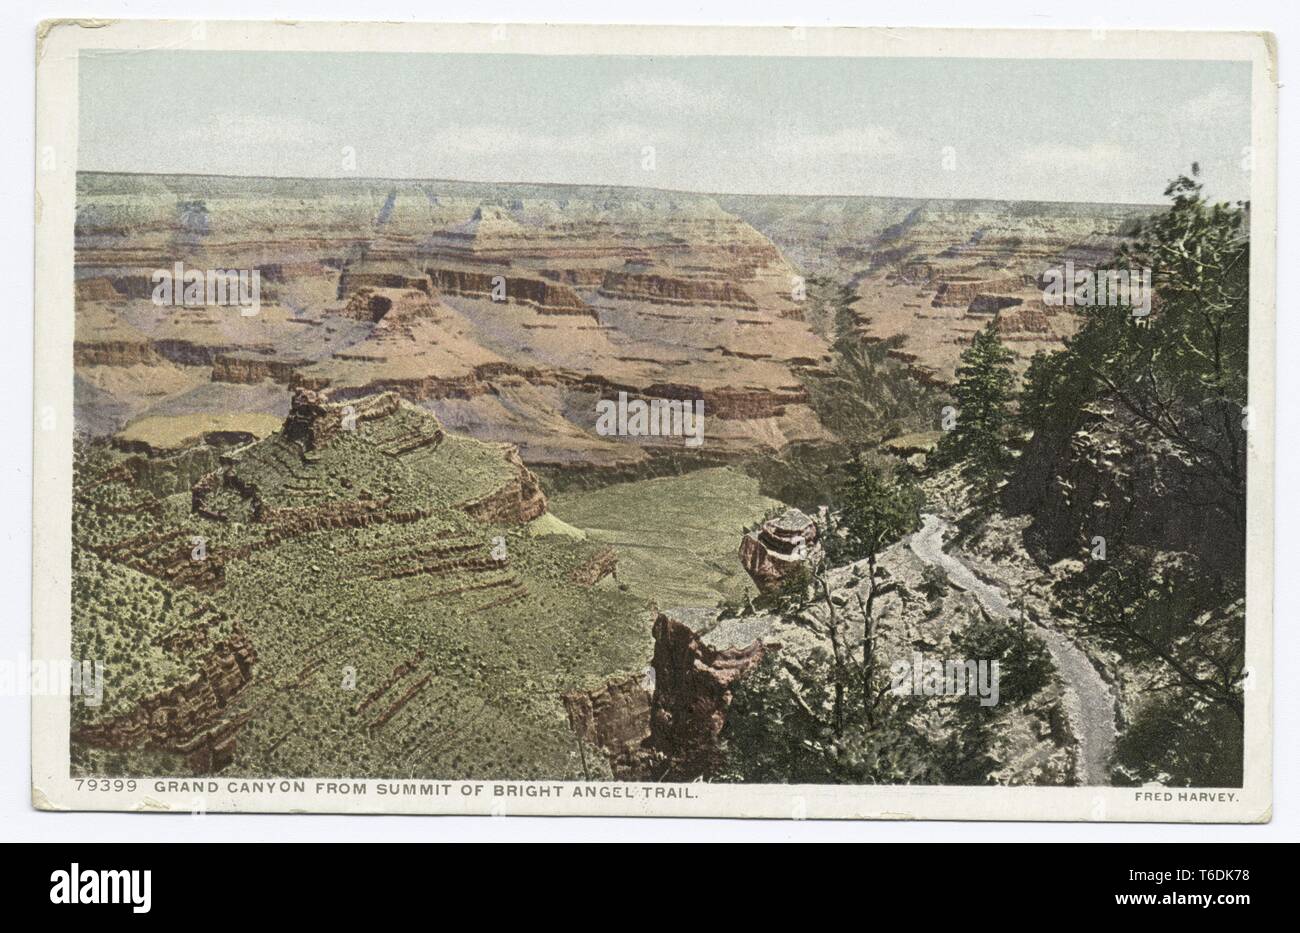 Detroit Publishing Company vintage riproduzione cartolina del Grand Canyon visto dalla vetta del Bright Angel Trail, Arizona, 1914. Dalla Biblioteca Pubblica di New York. () Foto Stock